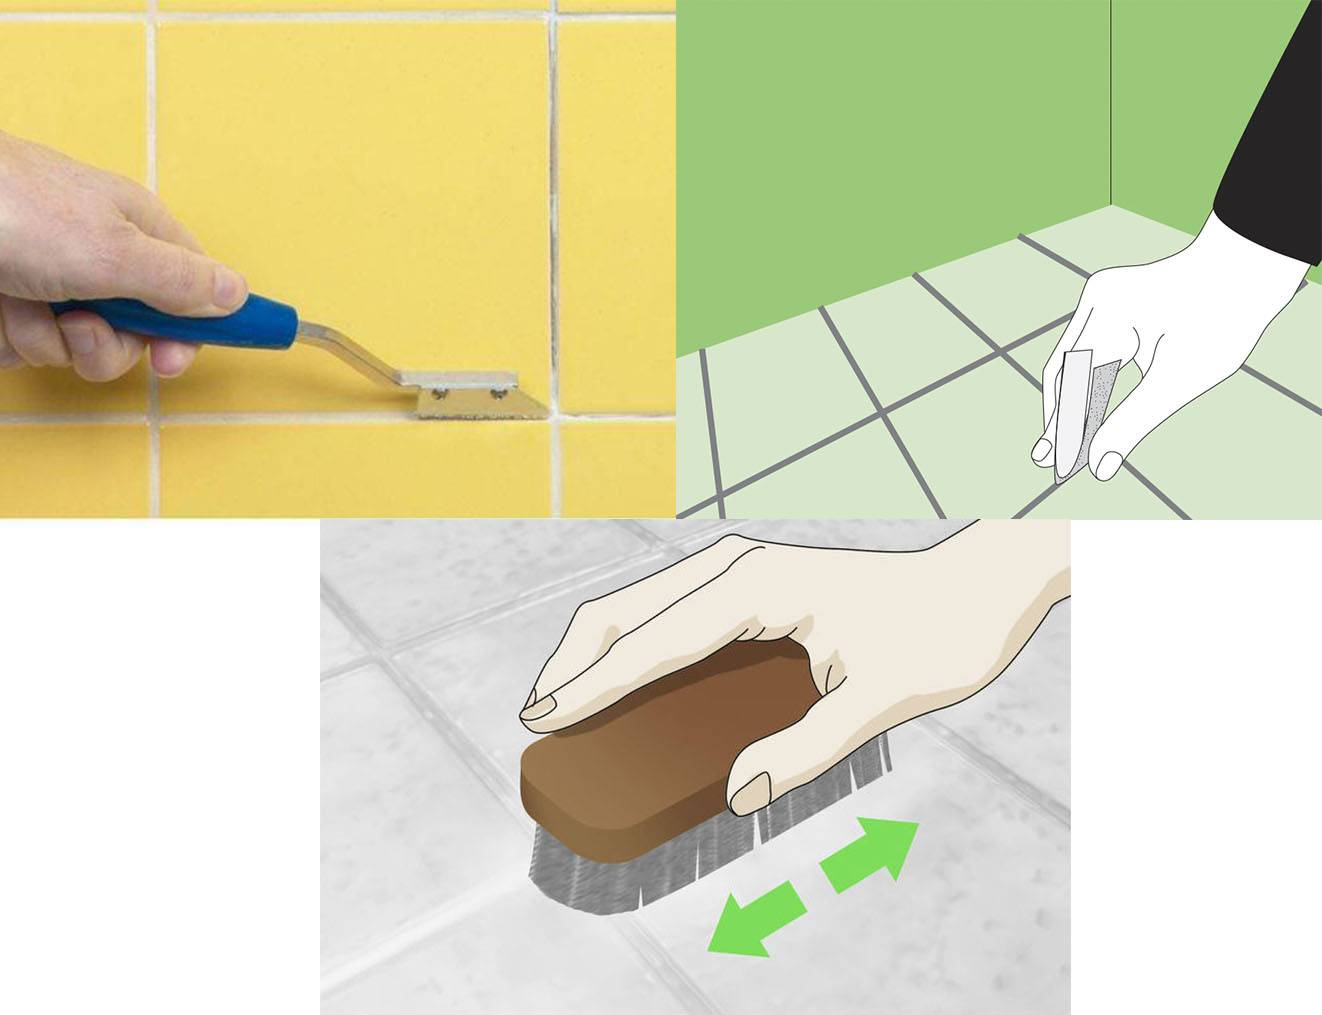 Как почистить швы между плиткой в ванной в домашних условиях: эффективные способы чистки межплиточных швов в ванной комнате